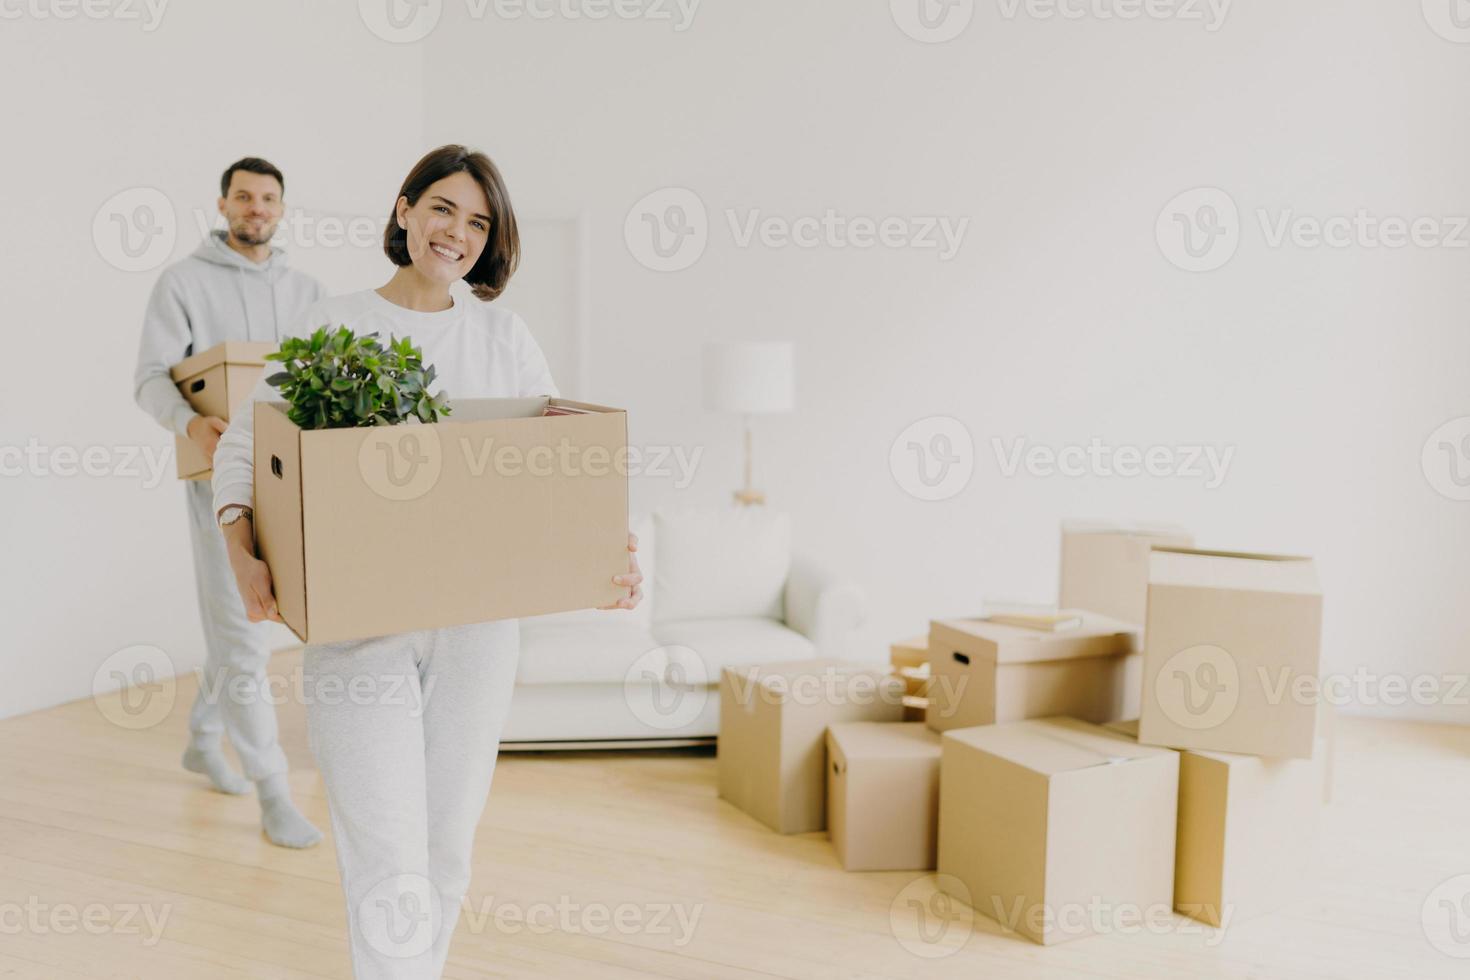 la mujer feliz y su esposo llevan cajas con pertenencias personales, están ocupados durante la reubicación en otro lugar para vivir, ingresan a un nuevo hogar, se mudan juntos en una casa grande, desempacan las cosas del hogar. foto